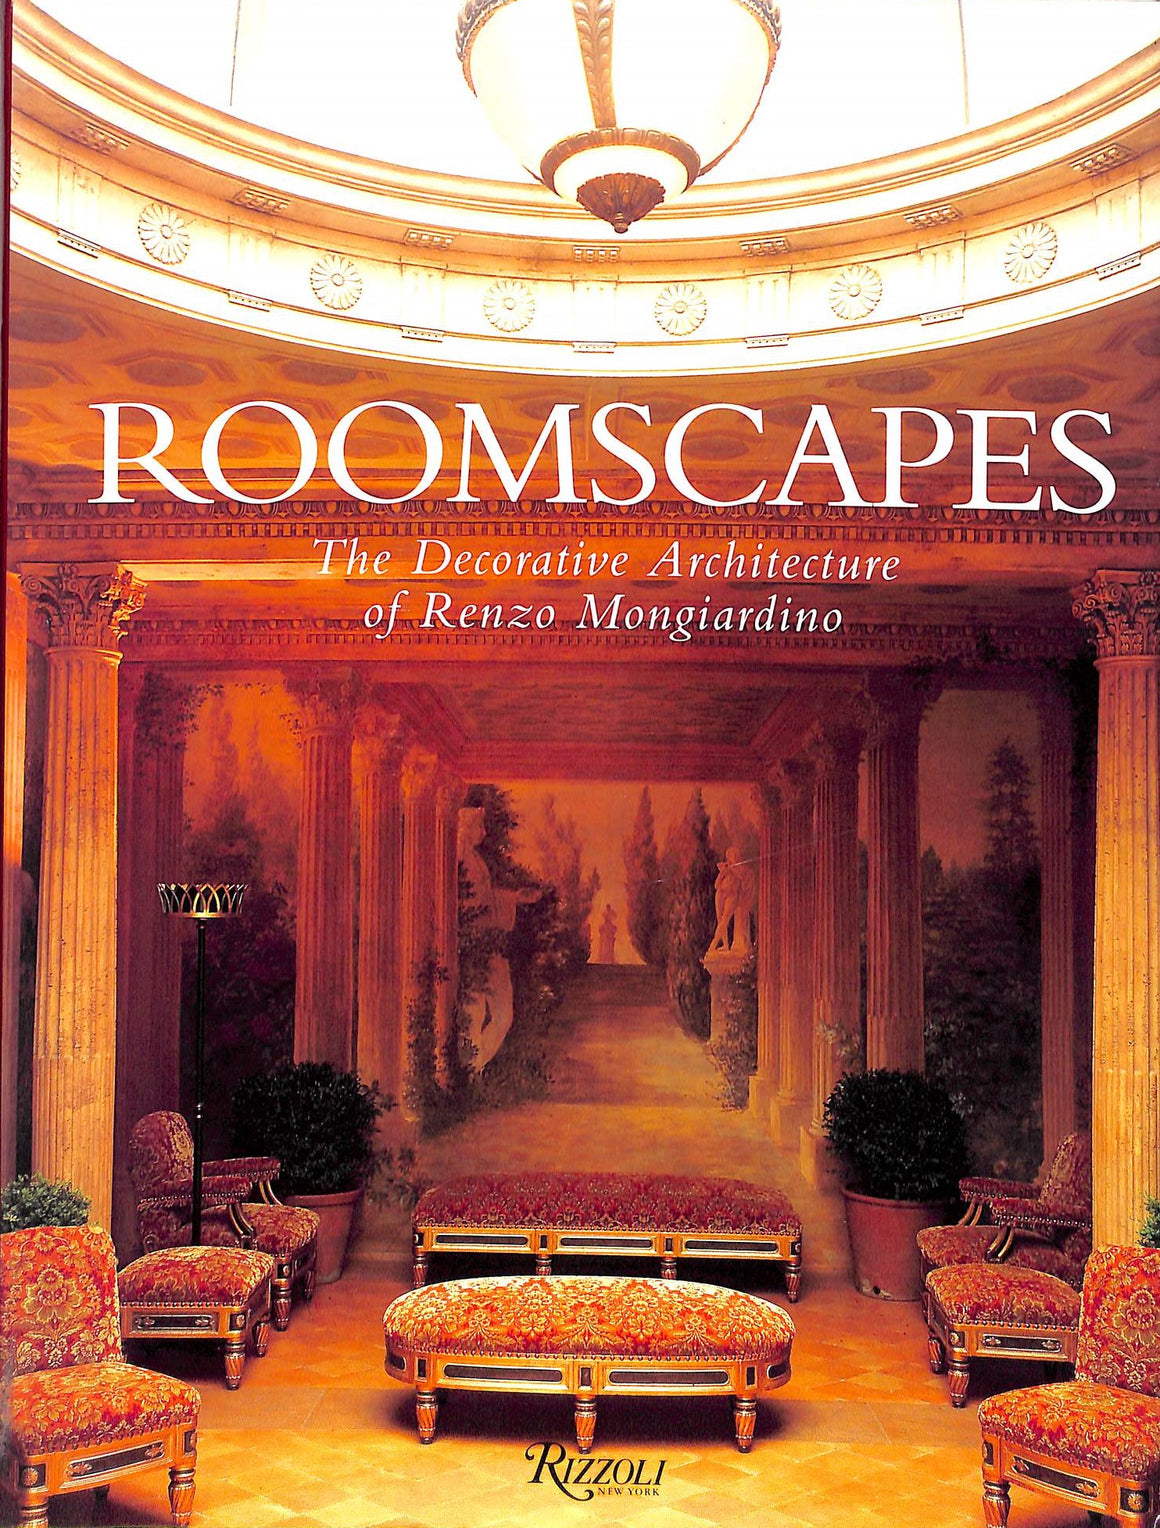 "Roomscapes: The Decorative Architecture of Renzo Mongiardino" 1993 CATTENEO, Fiorenzo (INSCRIBED)